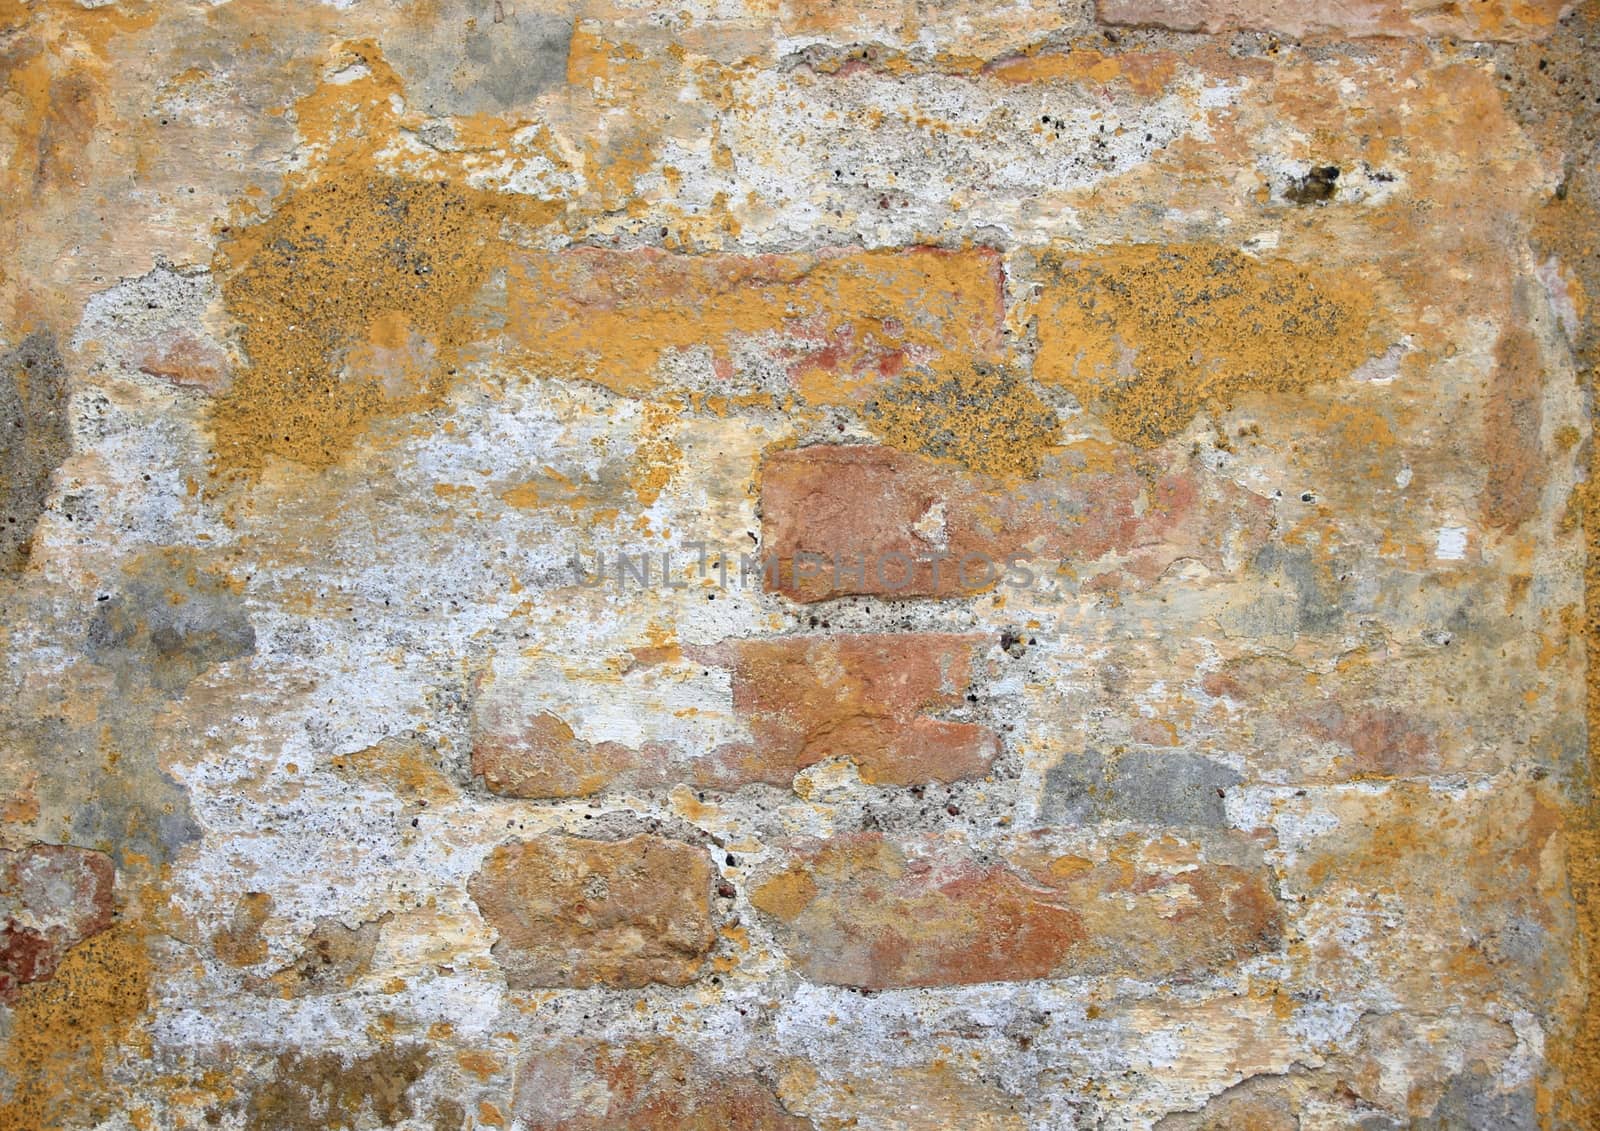 Grunge worn old yellow brickwall texture background